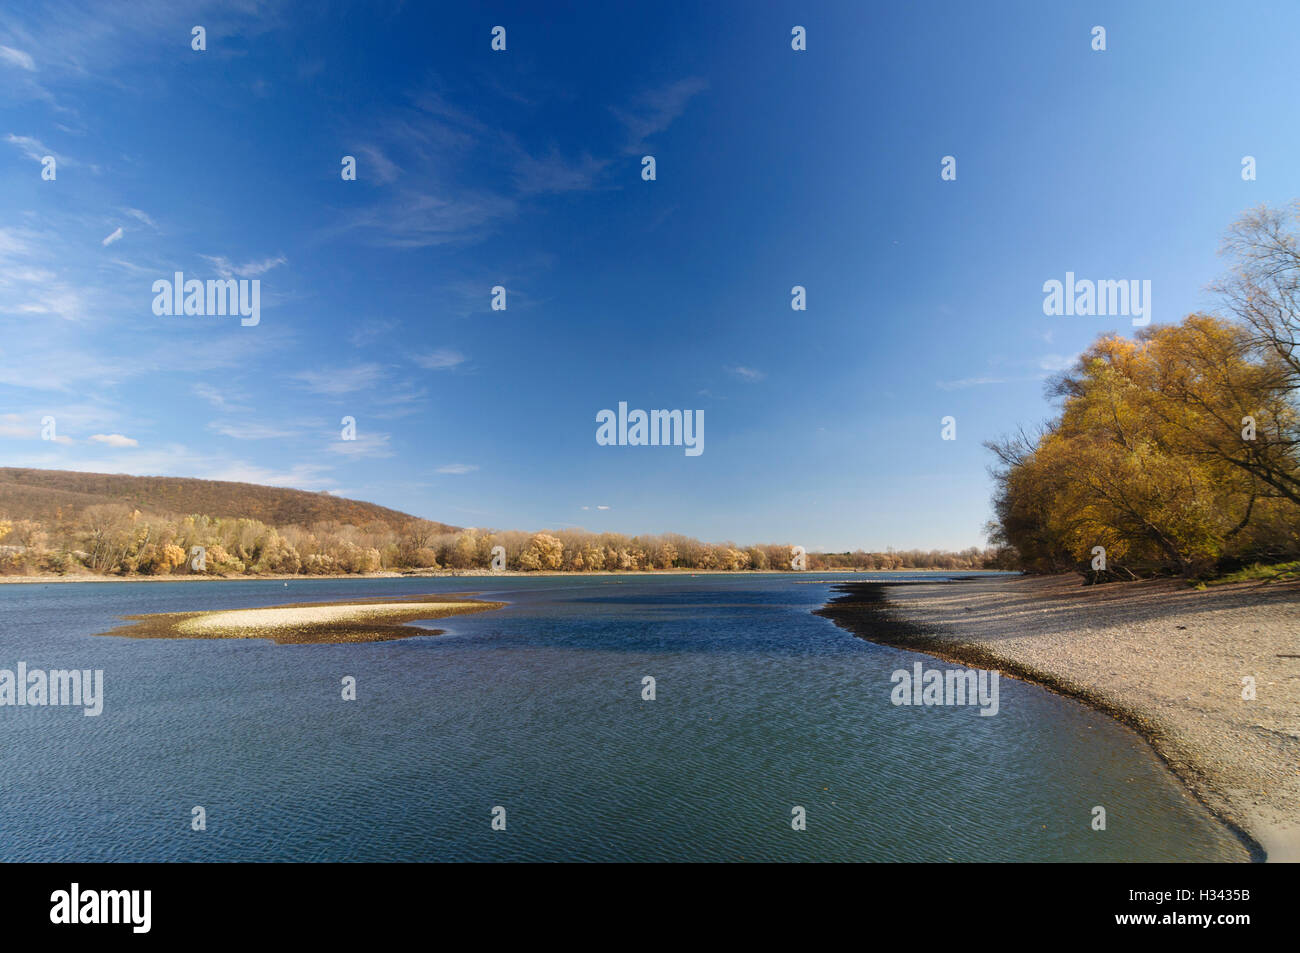 Hainburg an der Donau: Danube in Danube-Auen National Park, Donau, Niederösterreich, Lower Austria, Austria Stock Photo